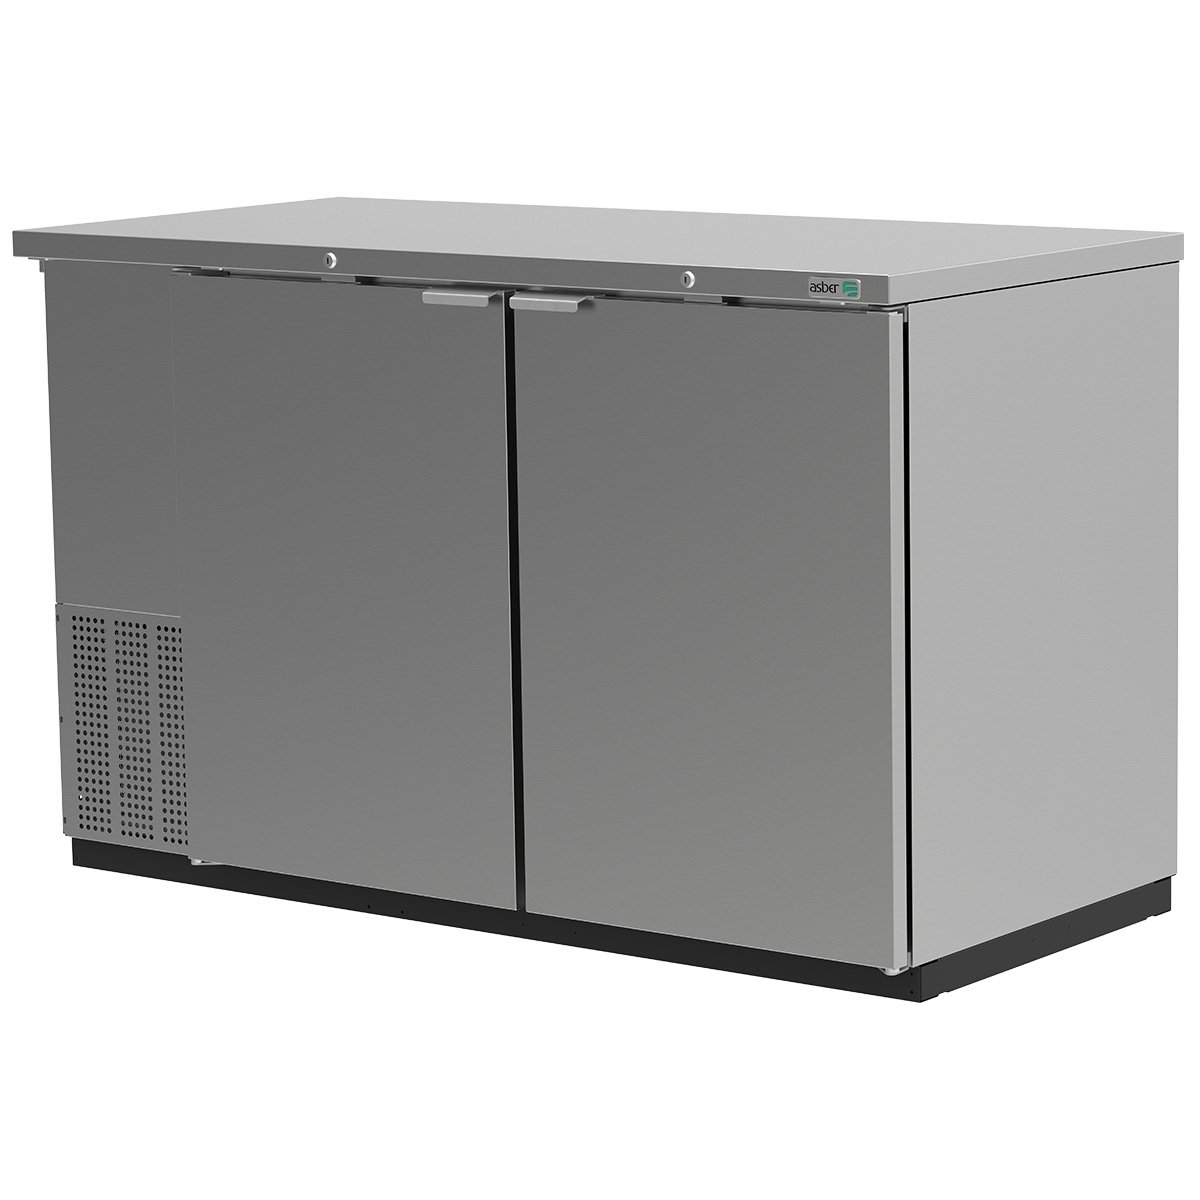 ASBER ABBC-58-S-HC Refrigerador Contrabarra Acero Inoxidable 2 Puertas Solidas 14.6 Pies3 Envio Cobrar Refrigeracion ASBER 